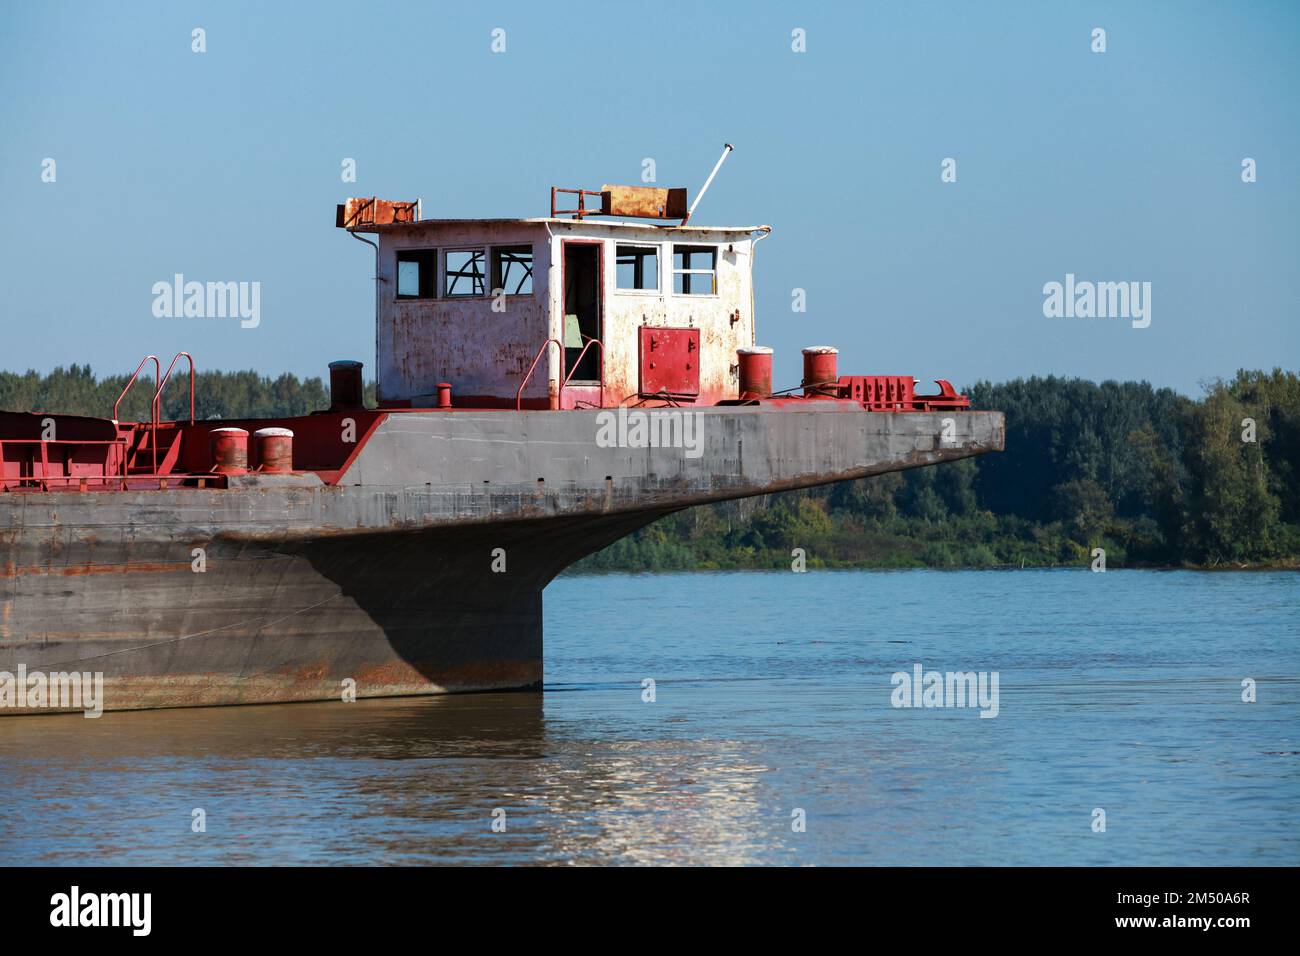 Stern-Überbau eines modernen Kutschers an der Donau an einem sonnigen Tag. Ruse, Bulgarien Stockfoto